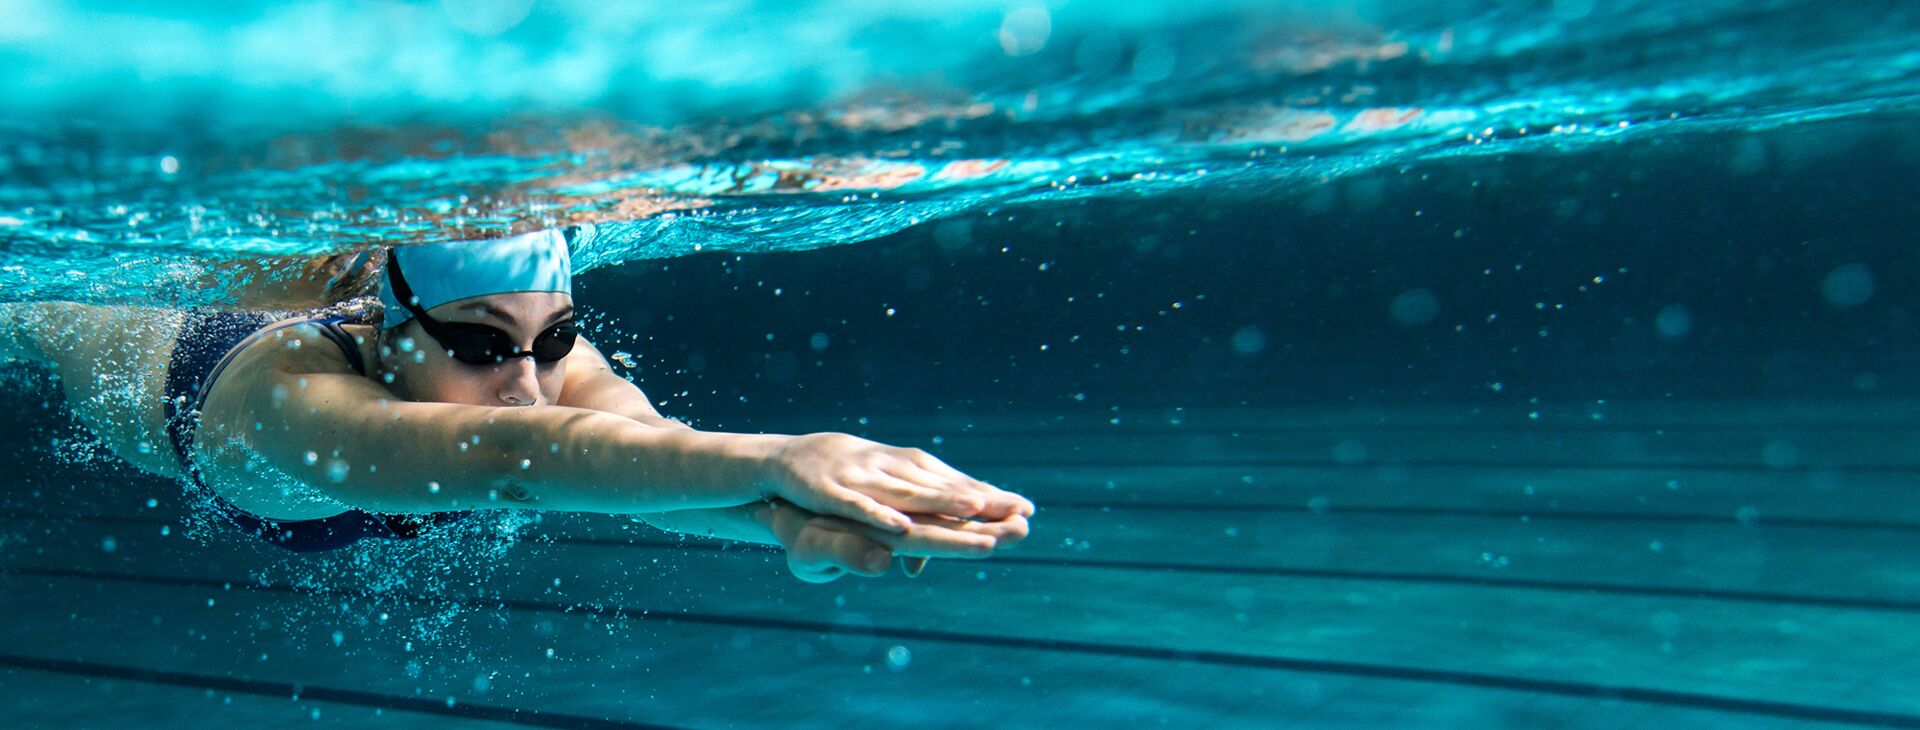 Schwimmerin mit Taucherbrille und Haube gleitet unter Wasser